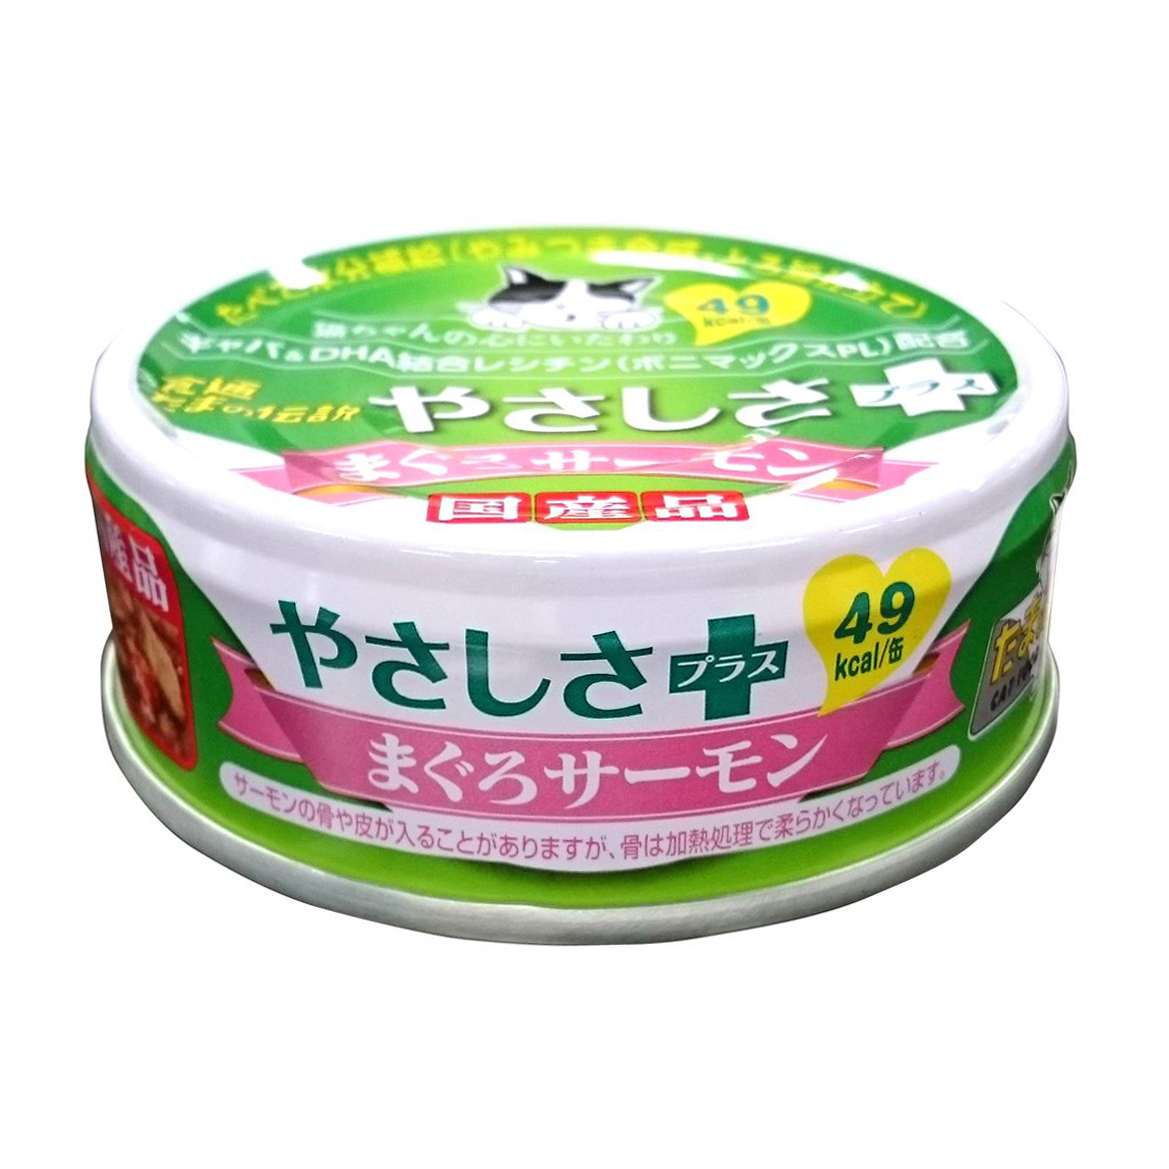 【特売品】STIサンヨー 食通たまの伝説 やさしさ+ まぐろサーモン 70g